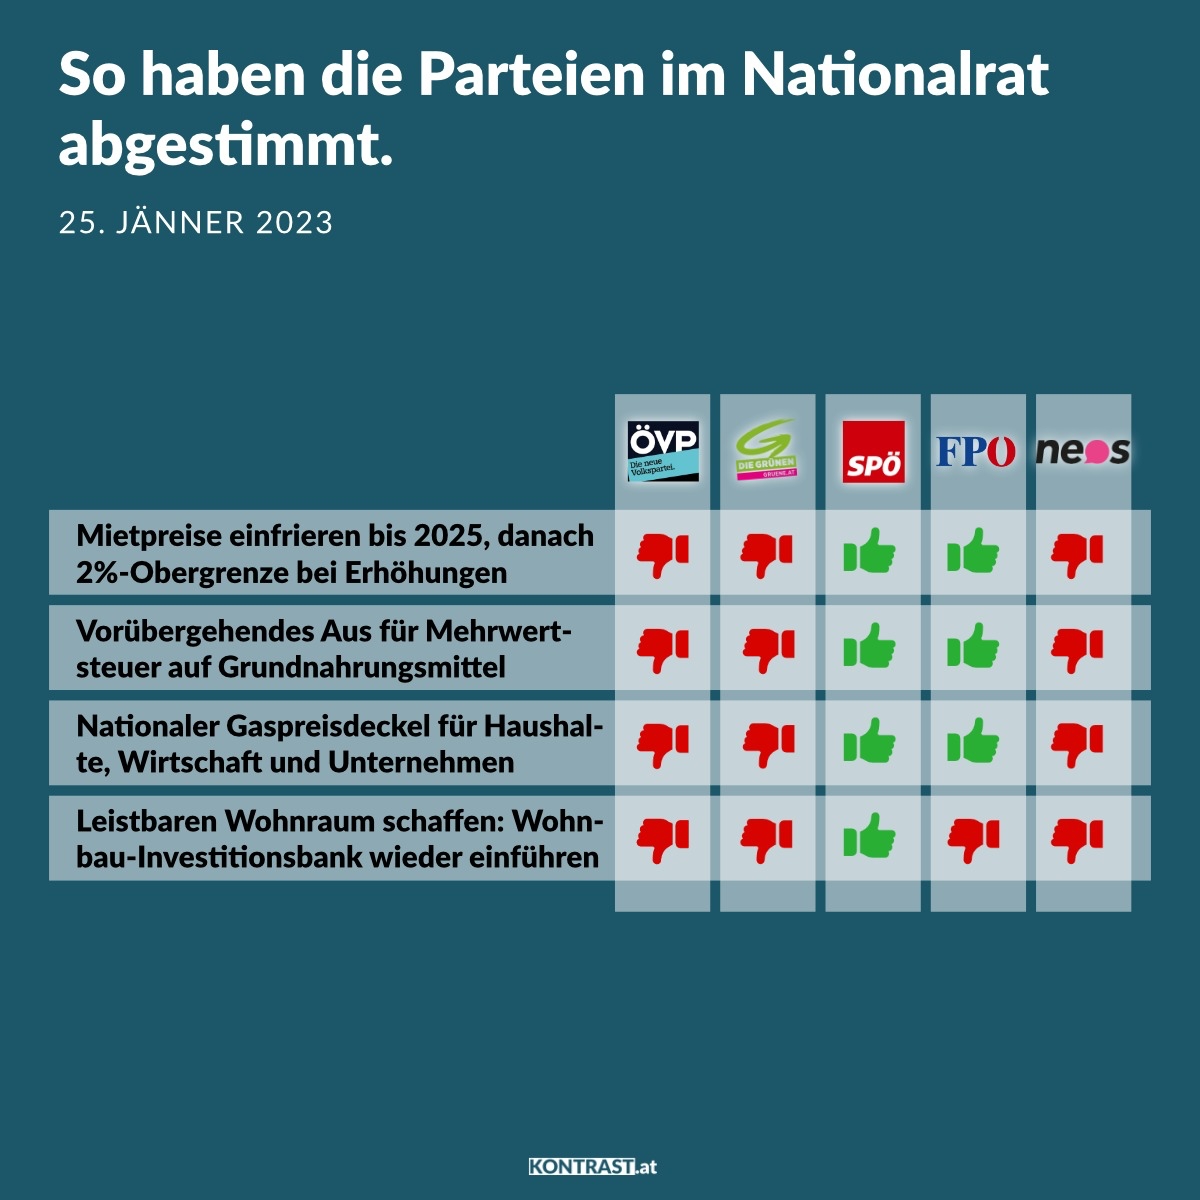 Nationalratssitzung am 25. Jänner: So haben die Parteien abgestimmt